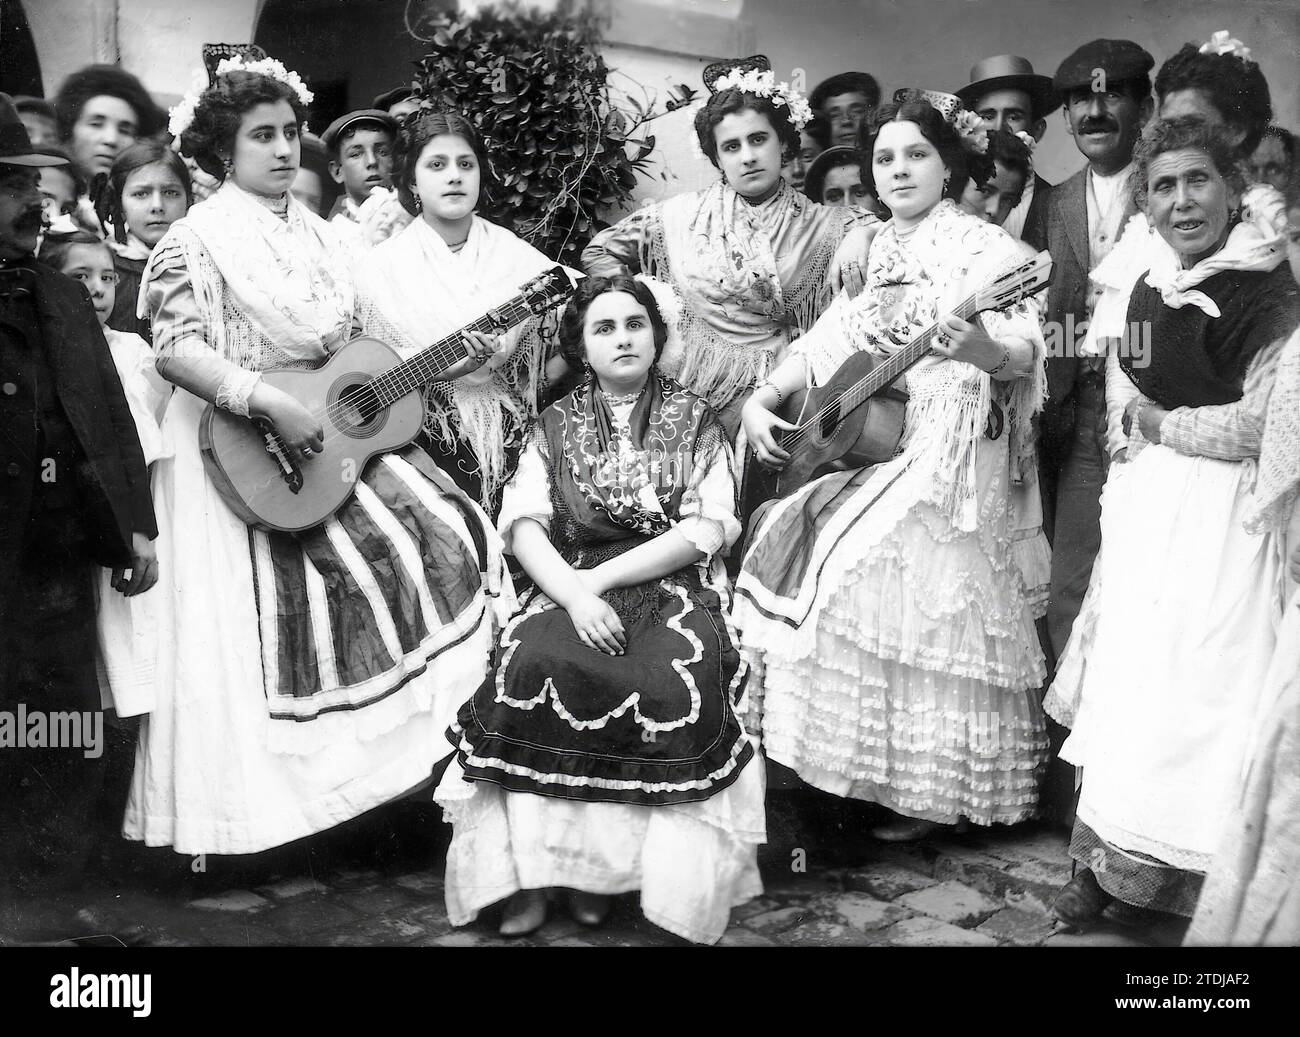 Córdoba, März 1910. Die Santo Domingo-Festlichkeiten in Córdoba. Gruppe junger Damen, die erste Preise beim typischen Paarwettbewerb des Landes gewonnen haben. Quelle: Album / Archivo ABC / Montilla Stockfoto